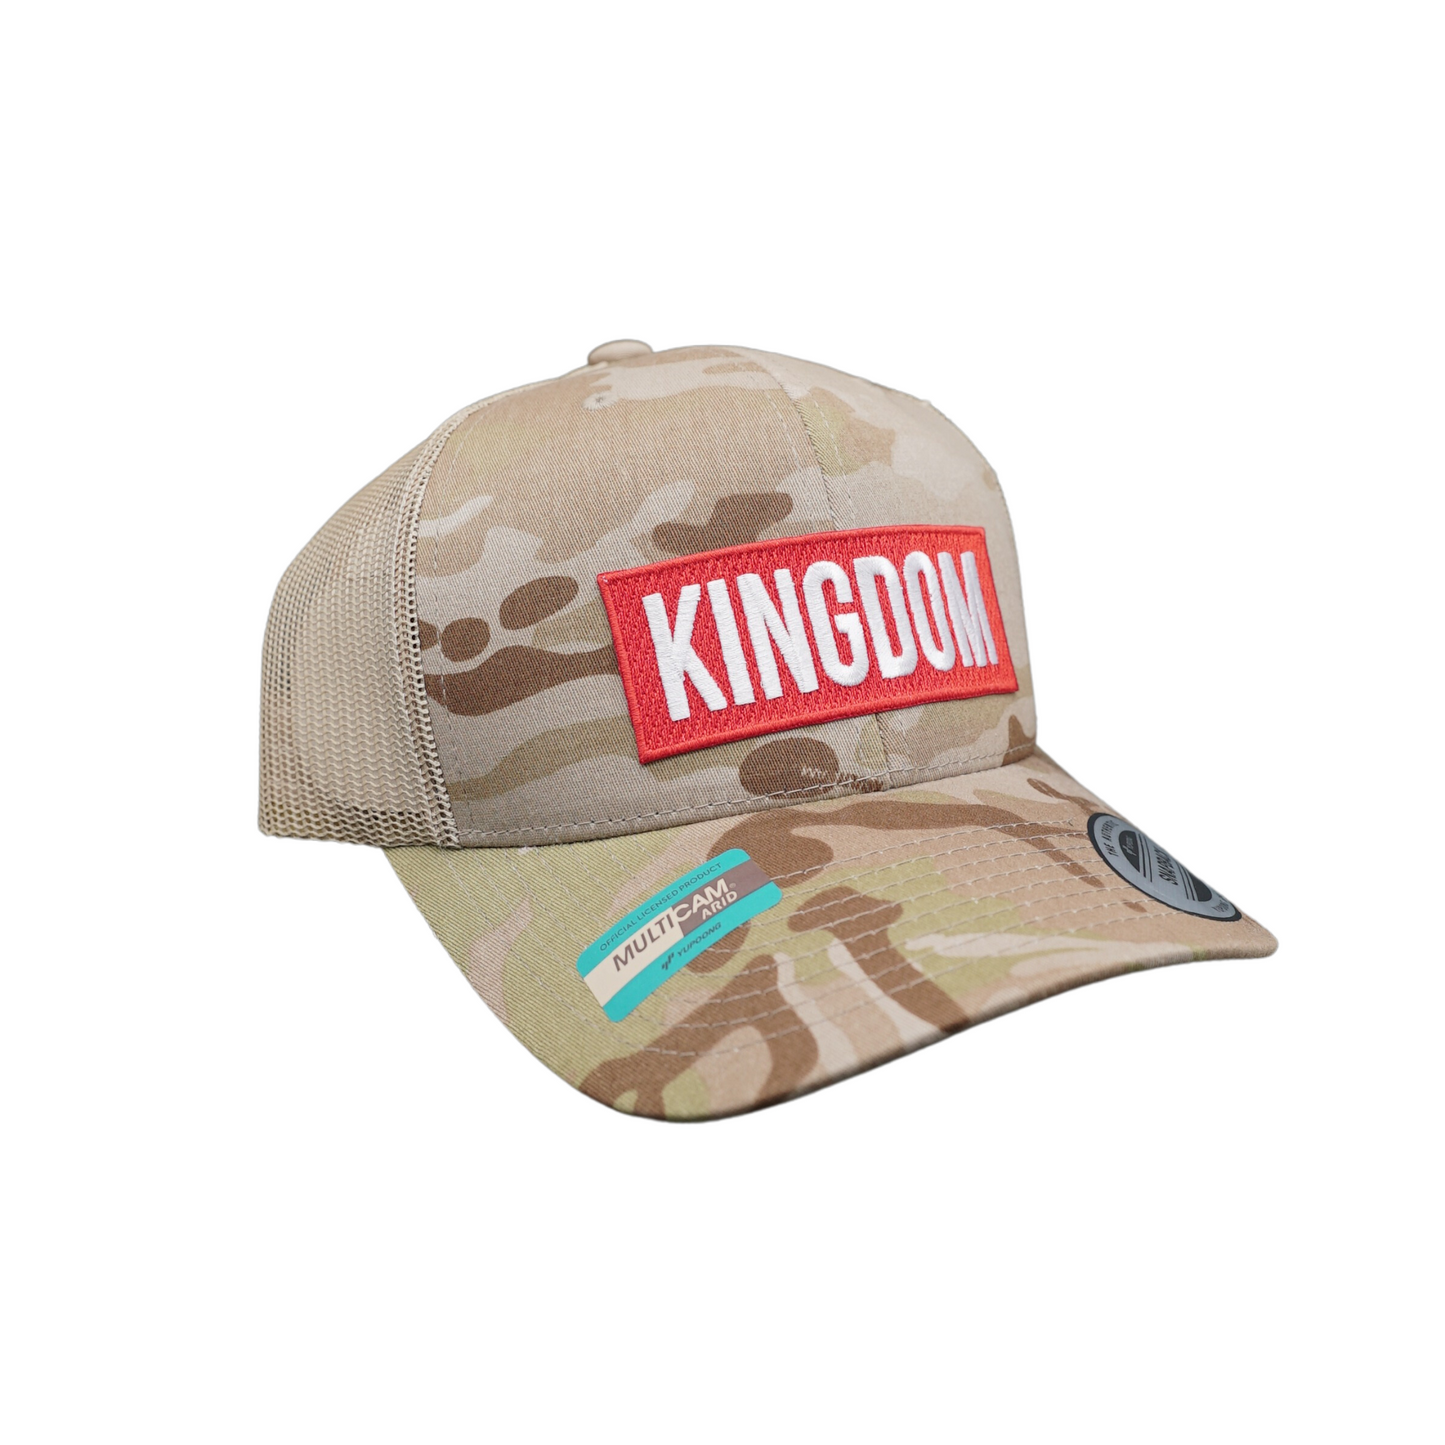 PREORDER - "Kingdom" - Tan Multicam Hat [valued at $40]